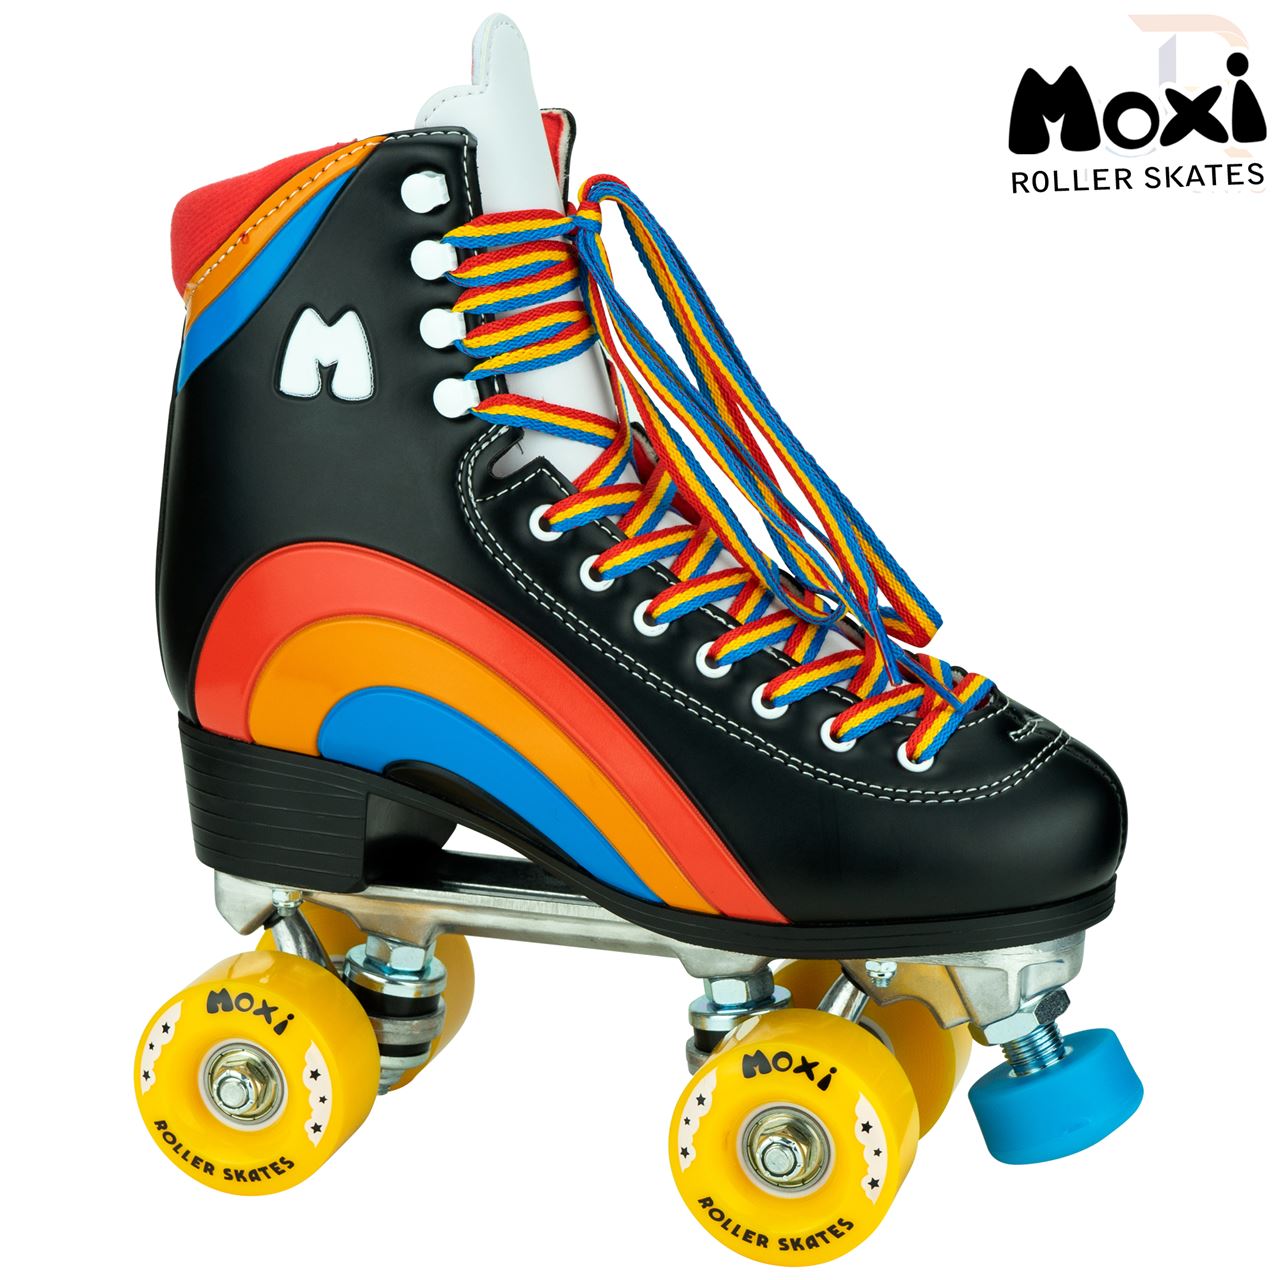 Moxi Rainbow Skates